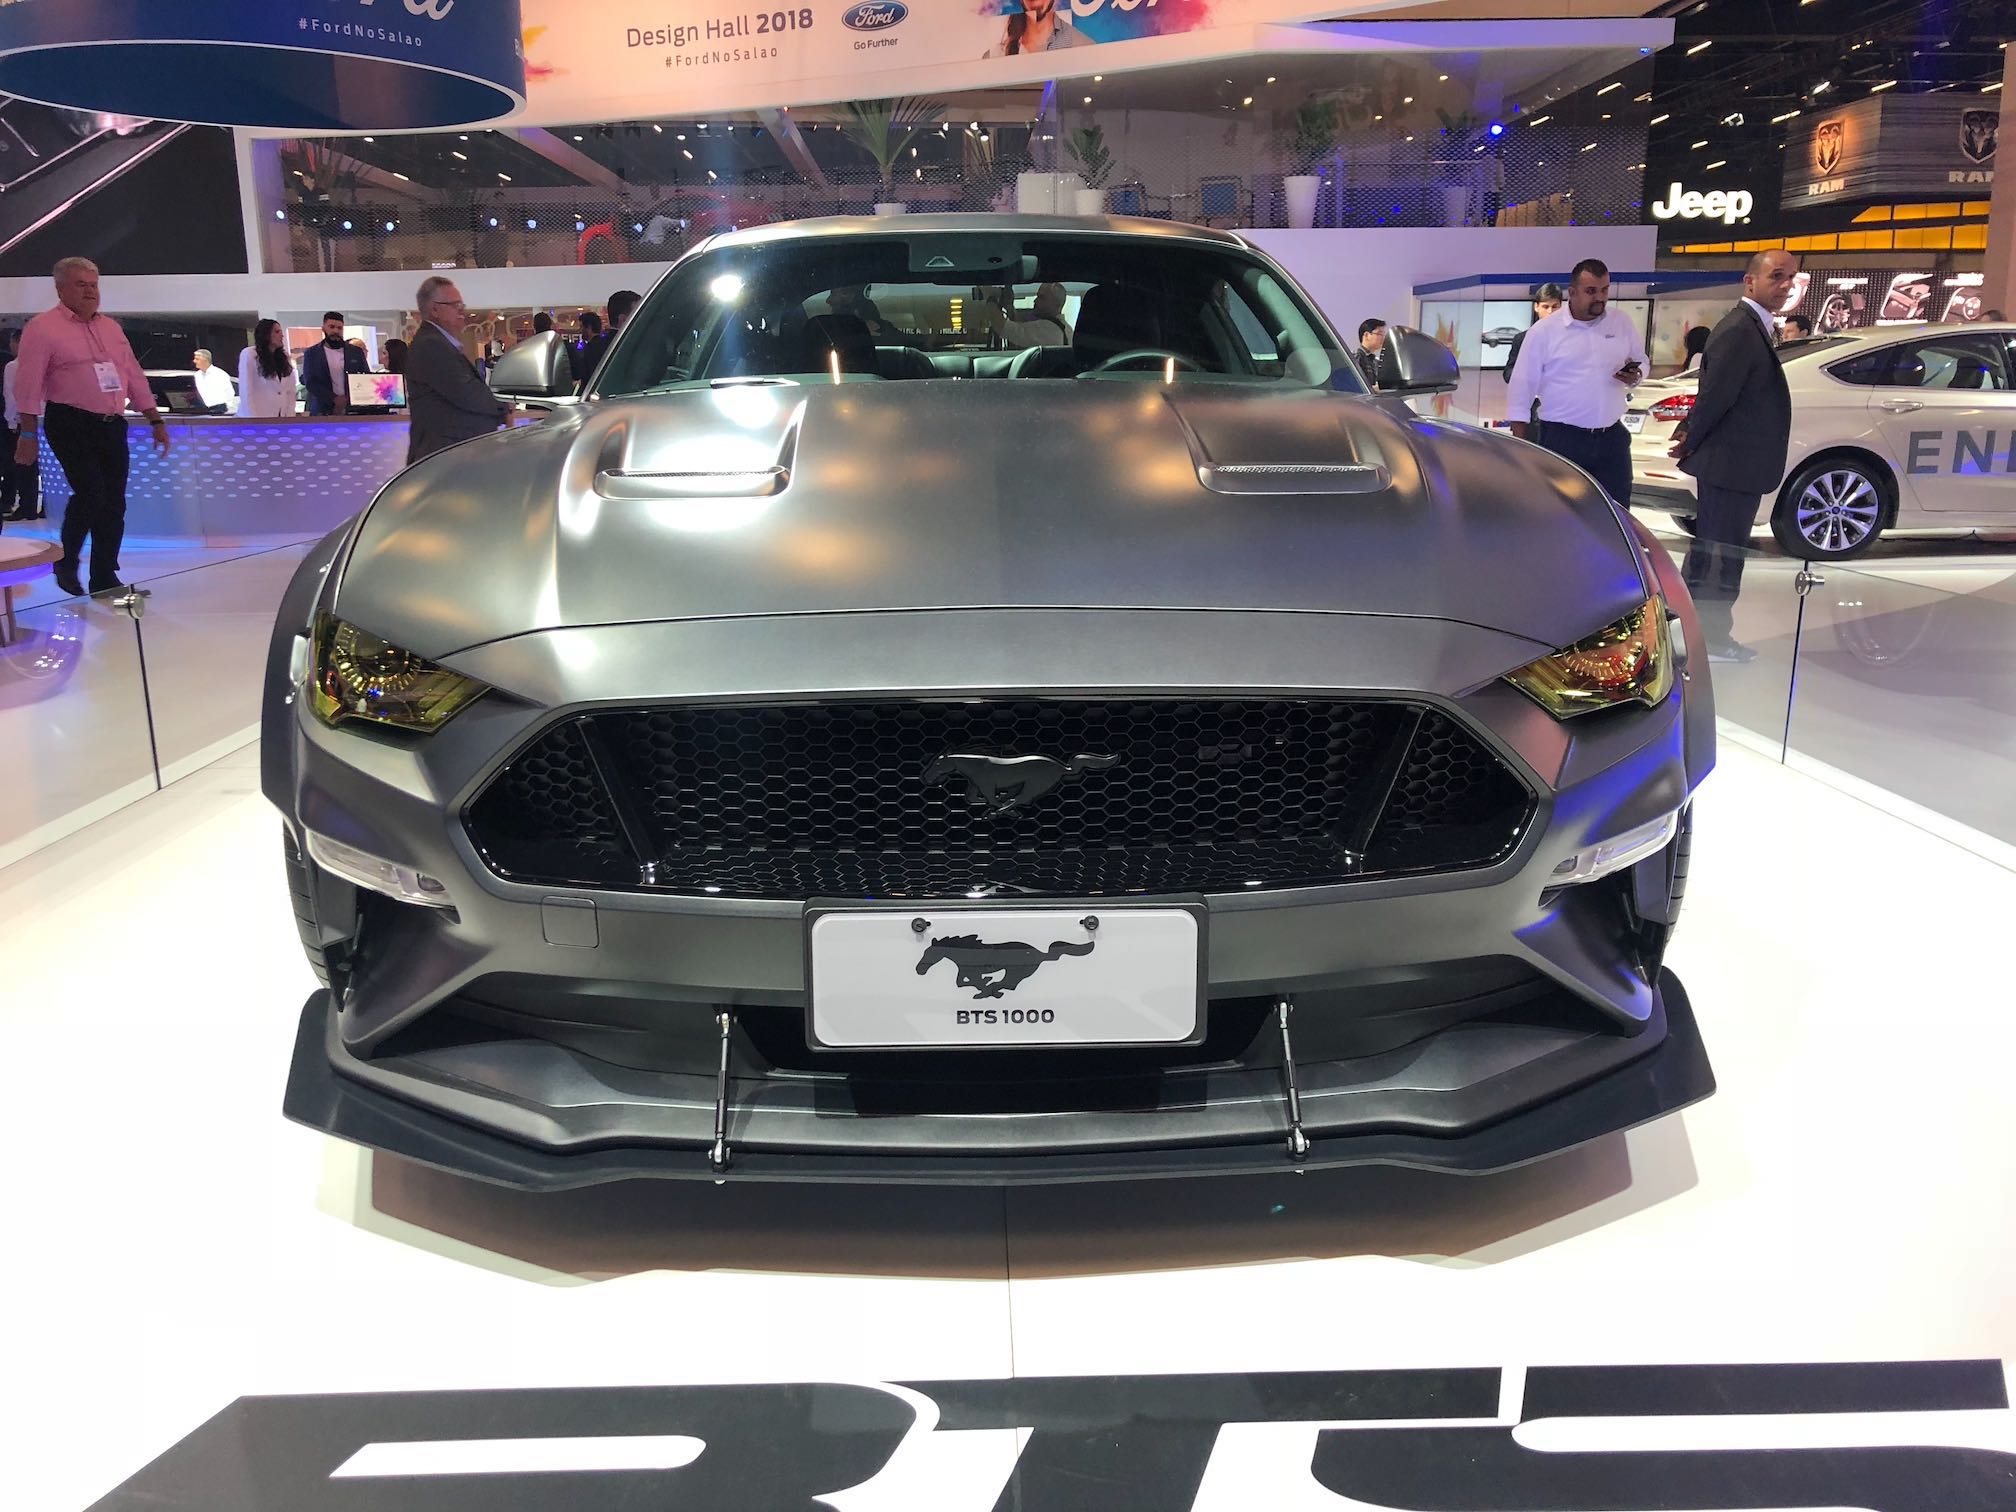 Ford Mustang Blog da Engenharia Salao do Automovel 2018 Eduardo Slabocicor Cavalcanti 18